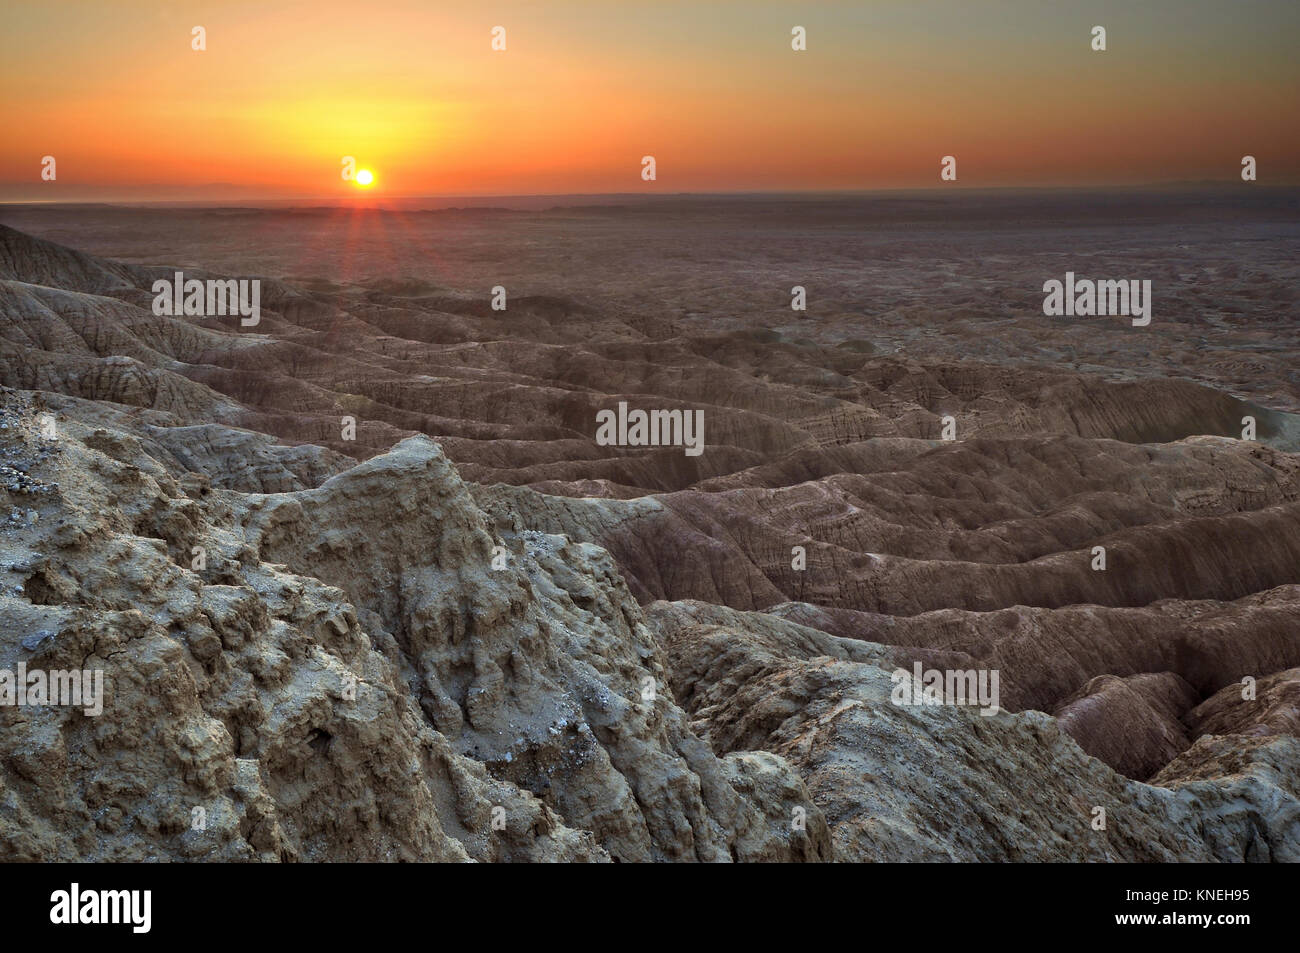 Borrego Badlands at sunrise, Anza-Borrego Desert State Park, California, United States Stock Photo